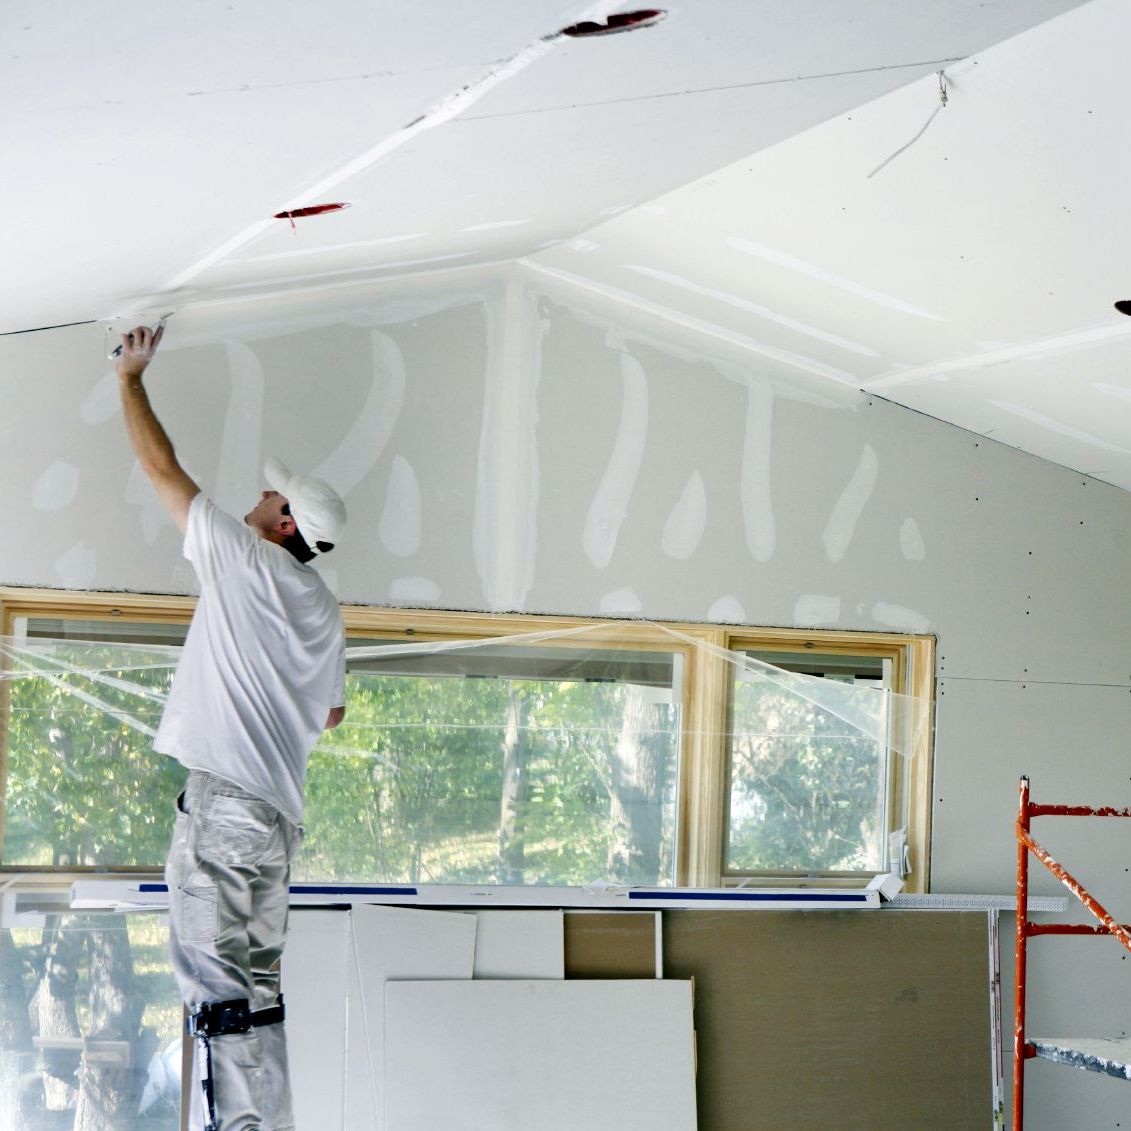 Maliar upravuje sadrokartónový strop pred maľovaním. Maľovanie sadrokartónového stropu je náročné, nie každý ho zvládne.